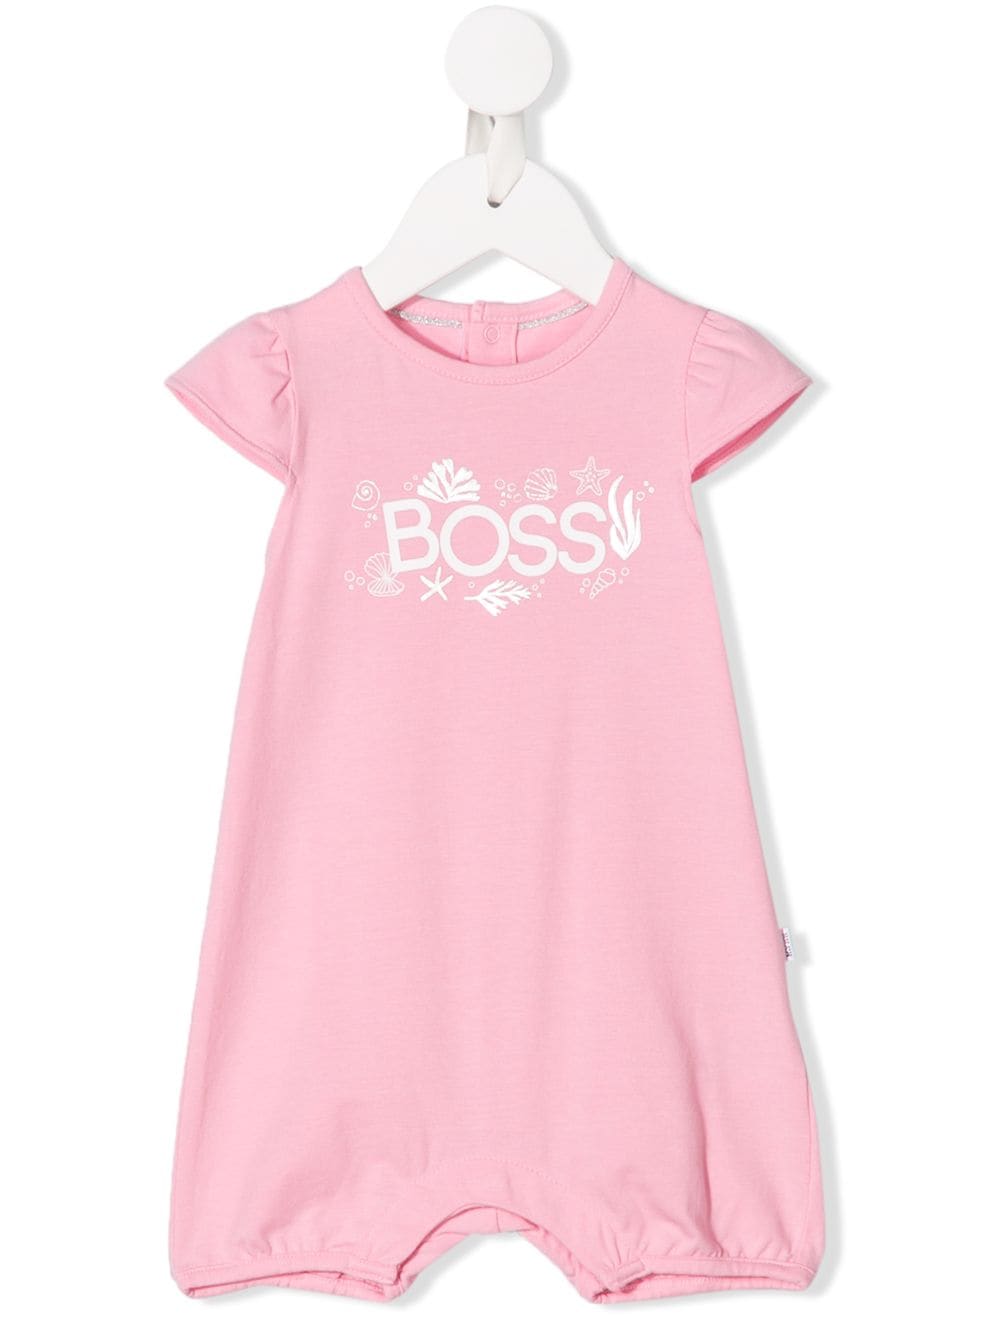 hugo boss baby girl sale